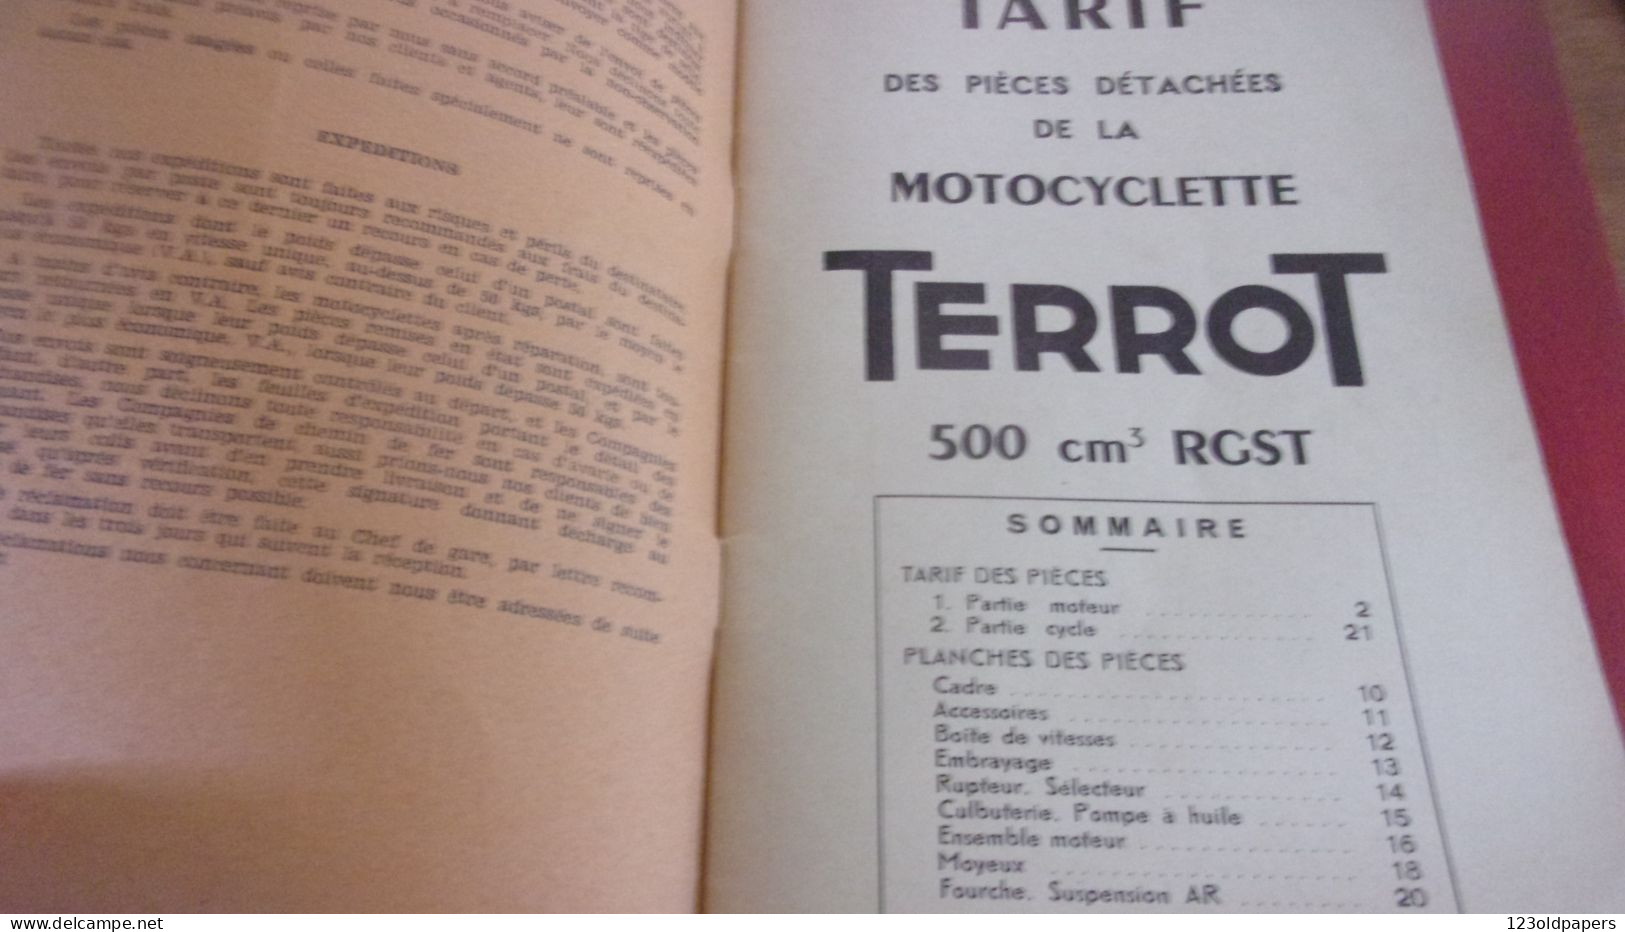 Catalogue 1951 TARIF DES PIECES DETACHEES  Cycles Motocyclettes "TERROT"  DIJON 500 CM3 TYPE RGST 32 PAGES - Transport